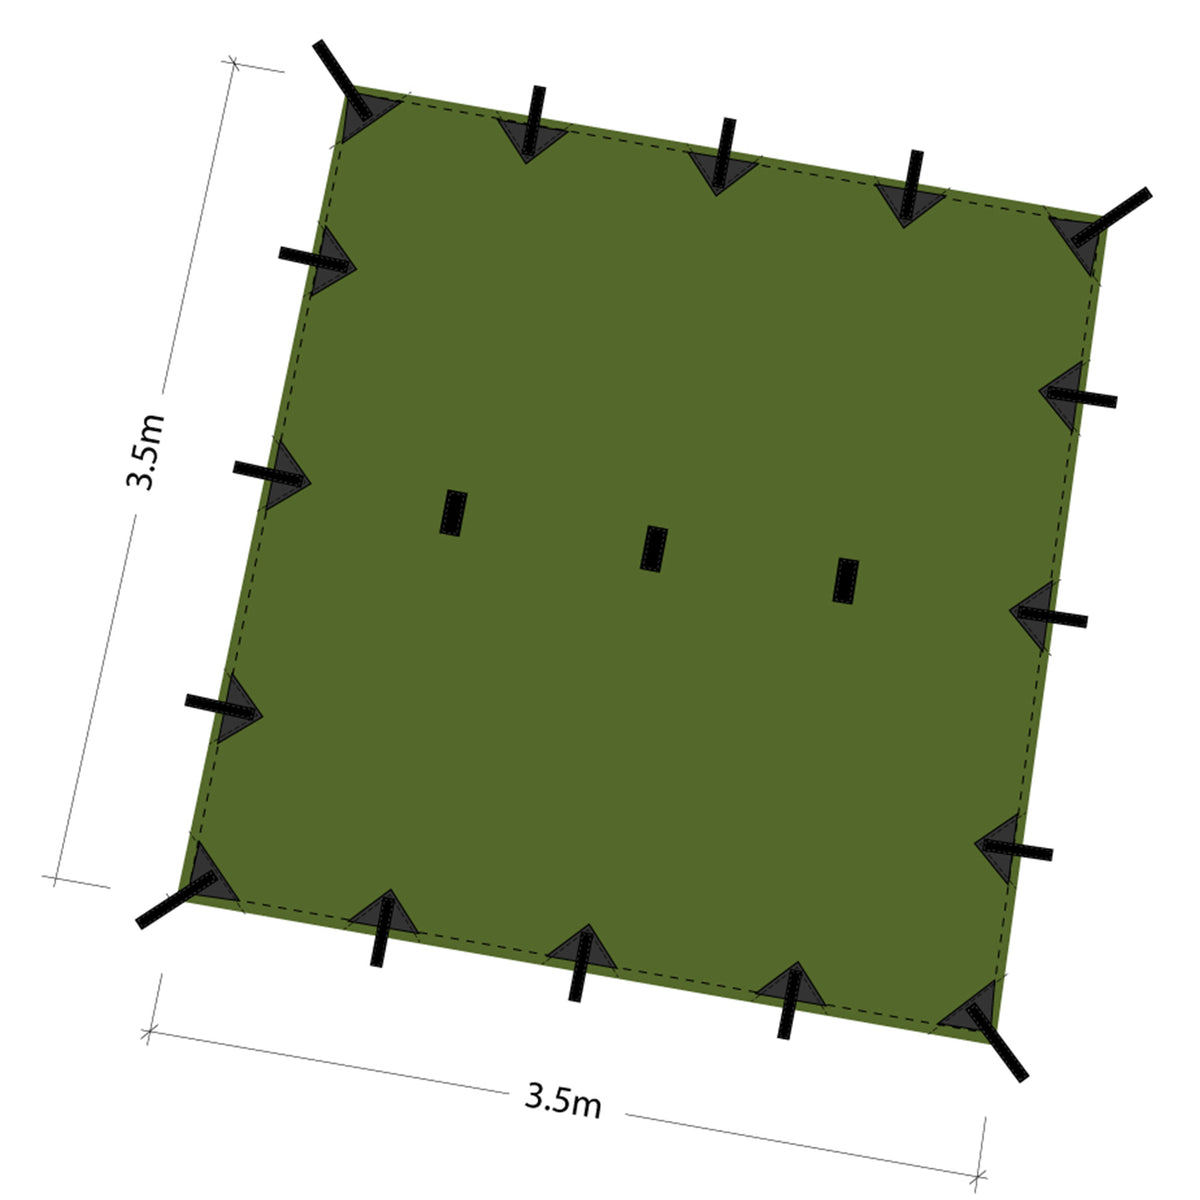 DD Tarp 3.5x3.5 metri olive green schema dimensioni